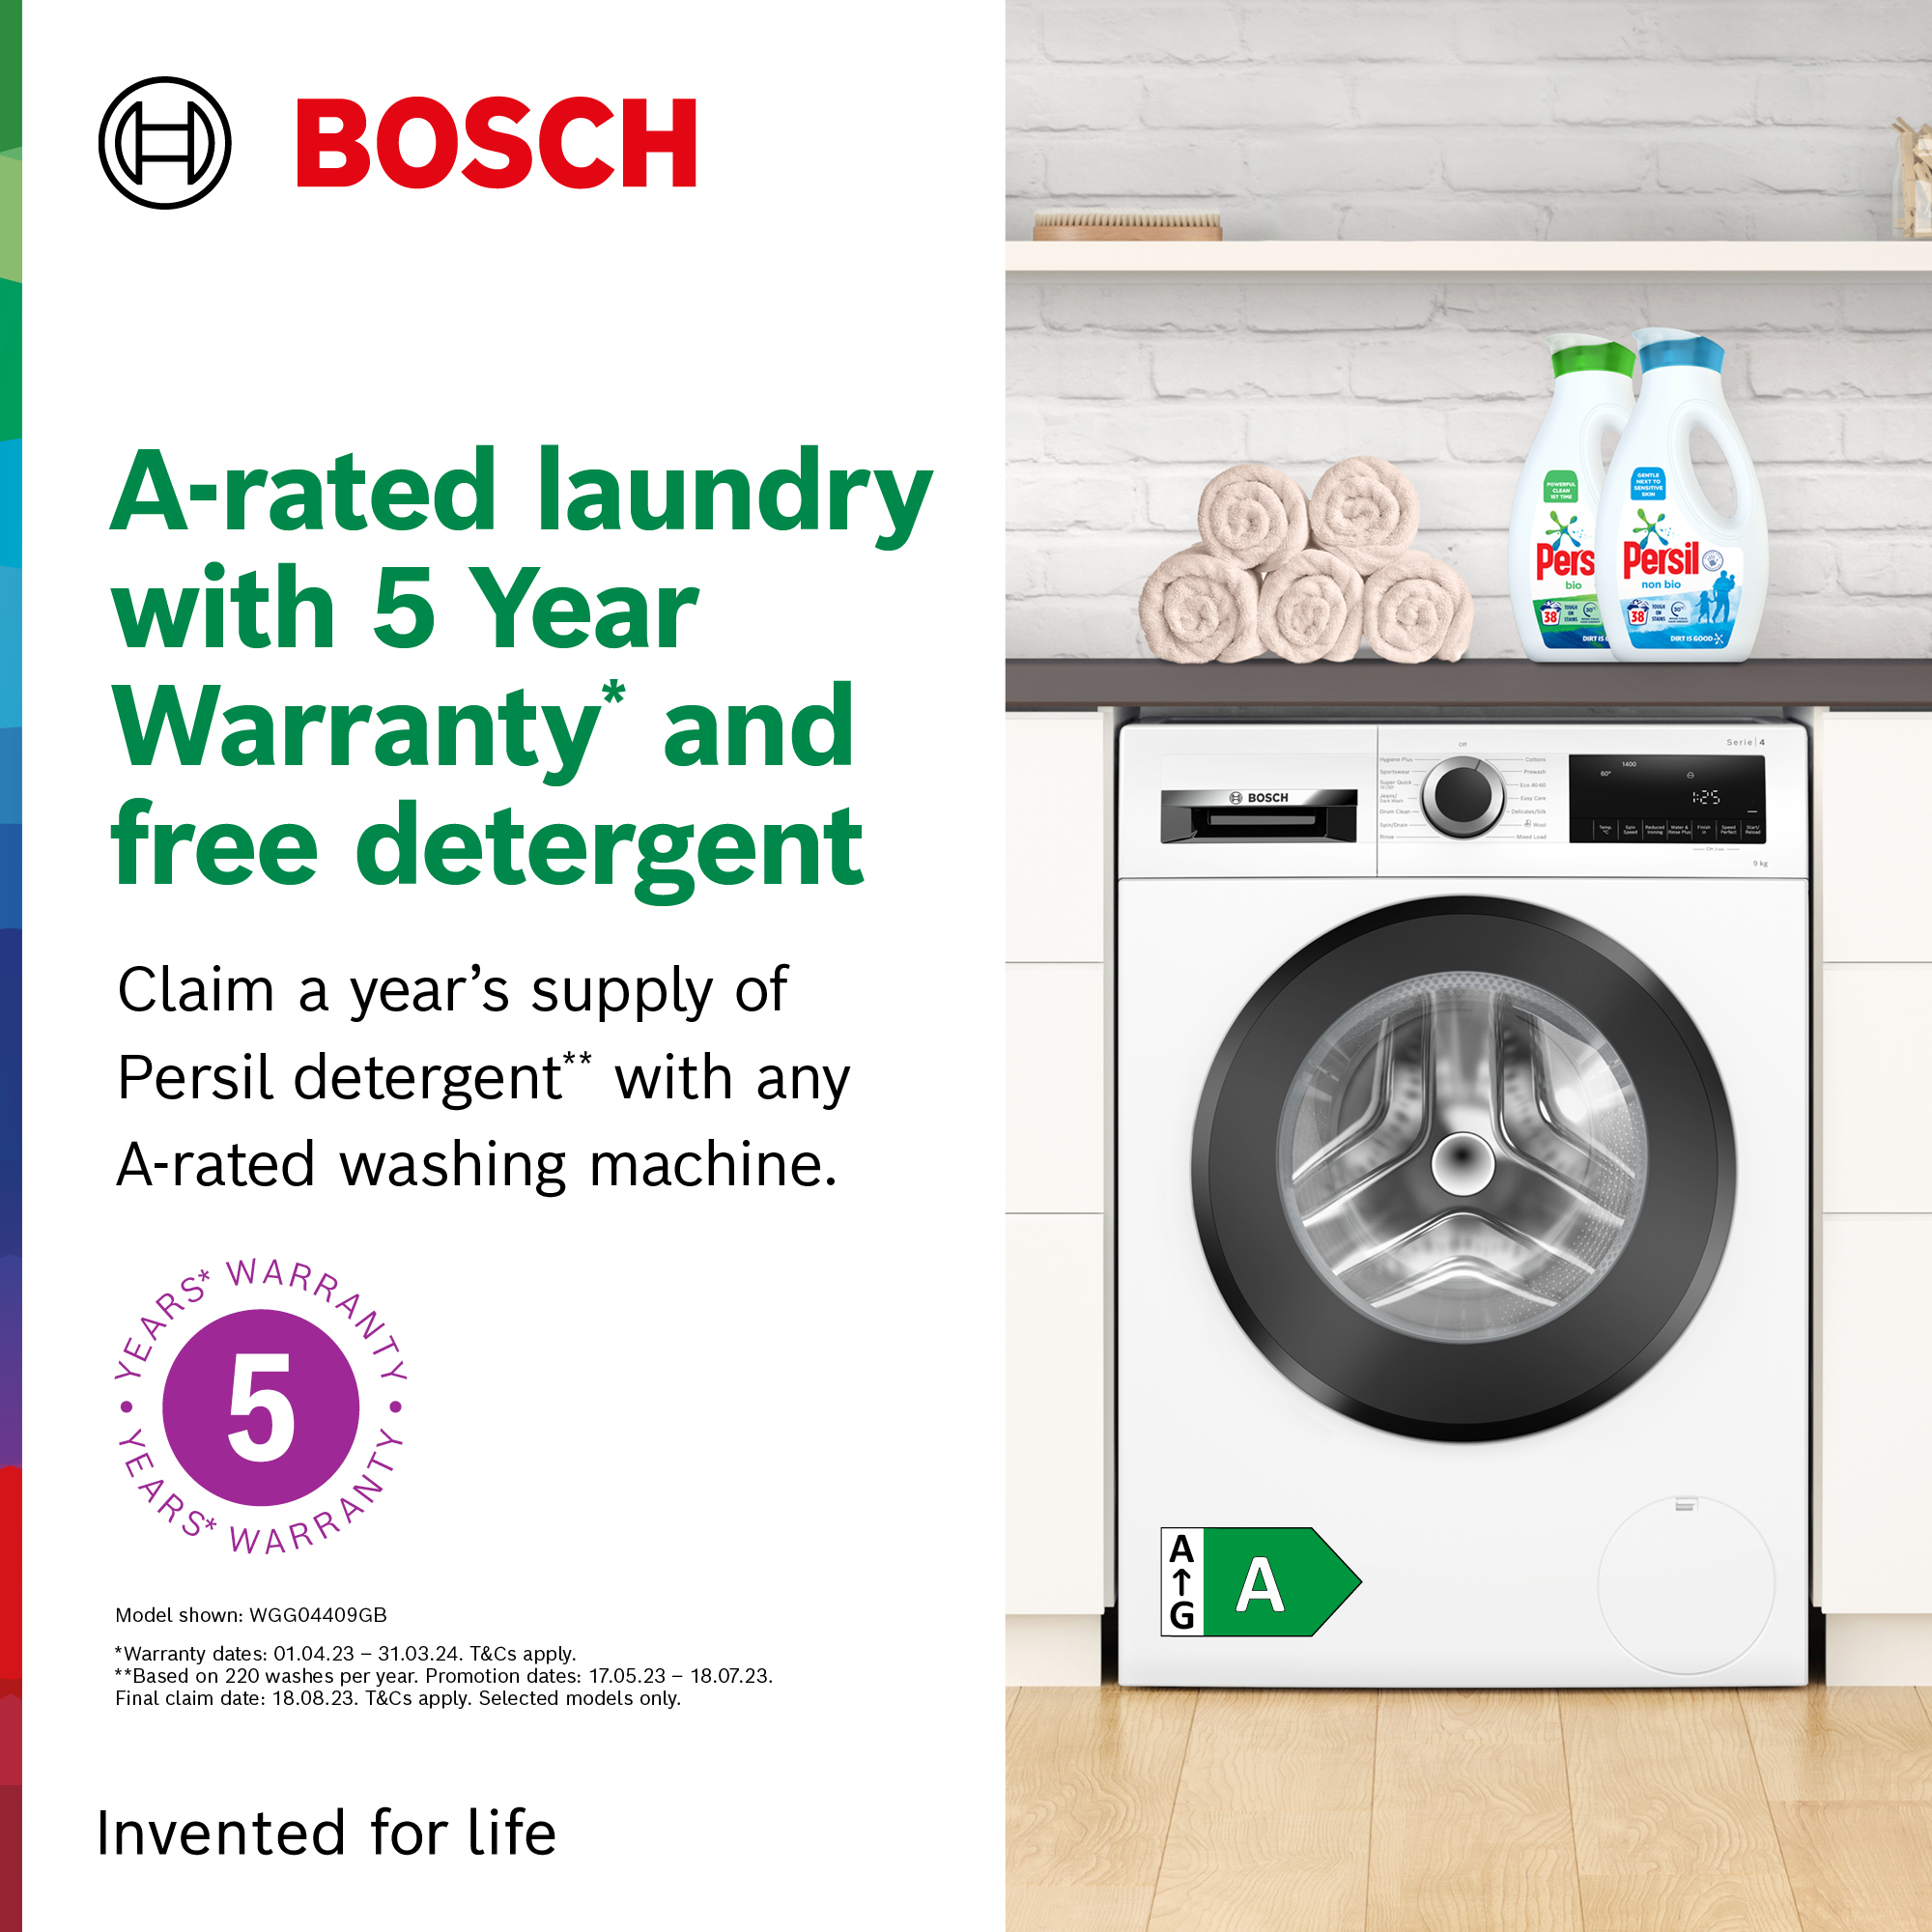 Bosch Laundry Gift